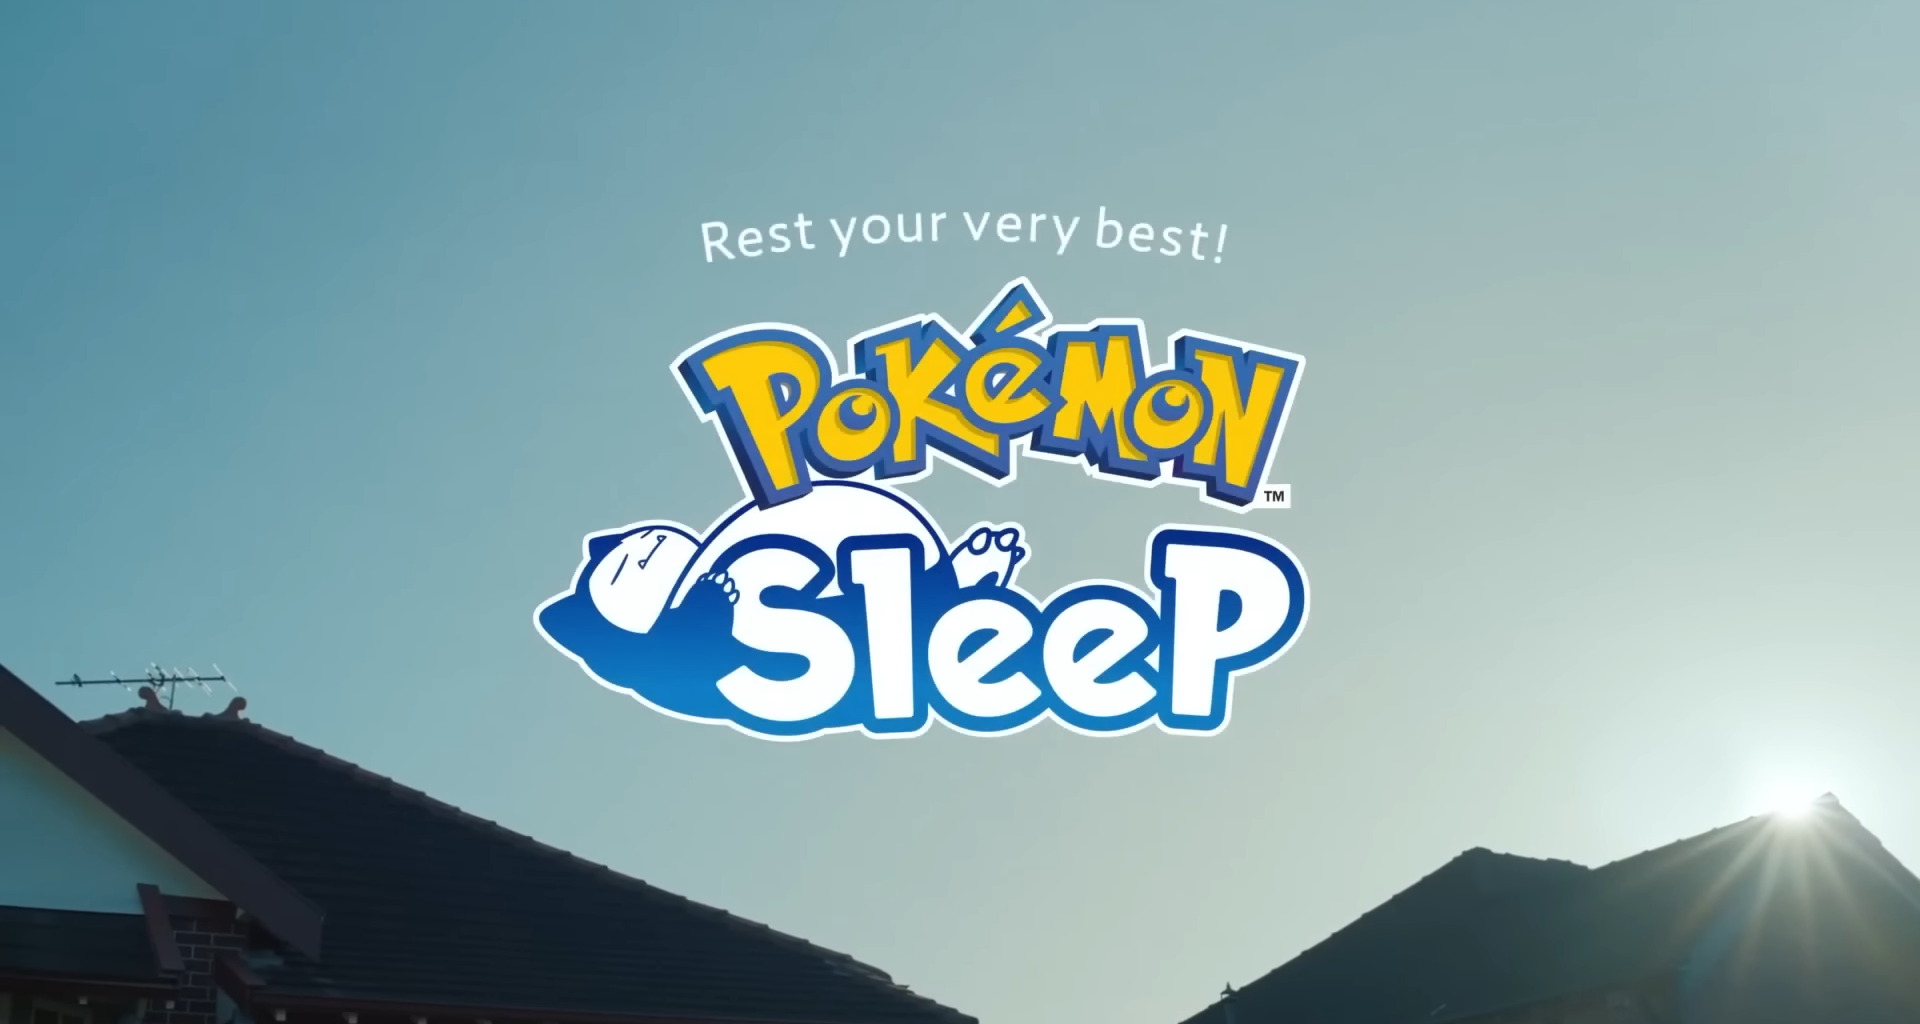 Um guia completo para jogar pokémon sleep enquanto dorme!. Um jogo em que você progride dormindo? Se ficou interessado pelo conceito, conheça mais sobre o novo game do universo de pokémon!